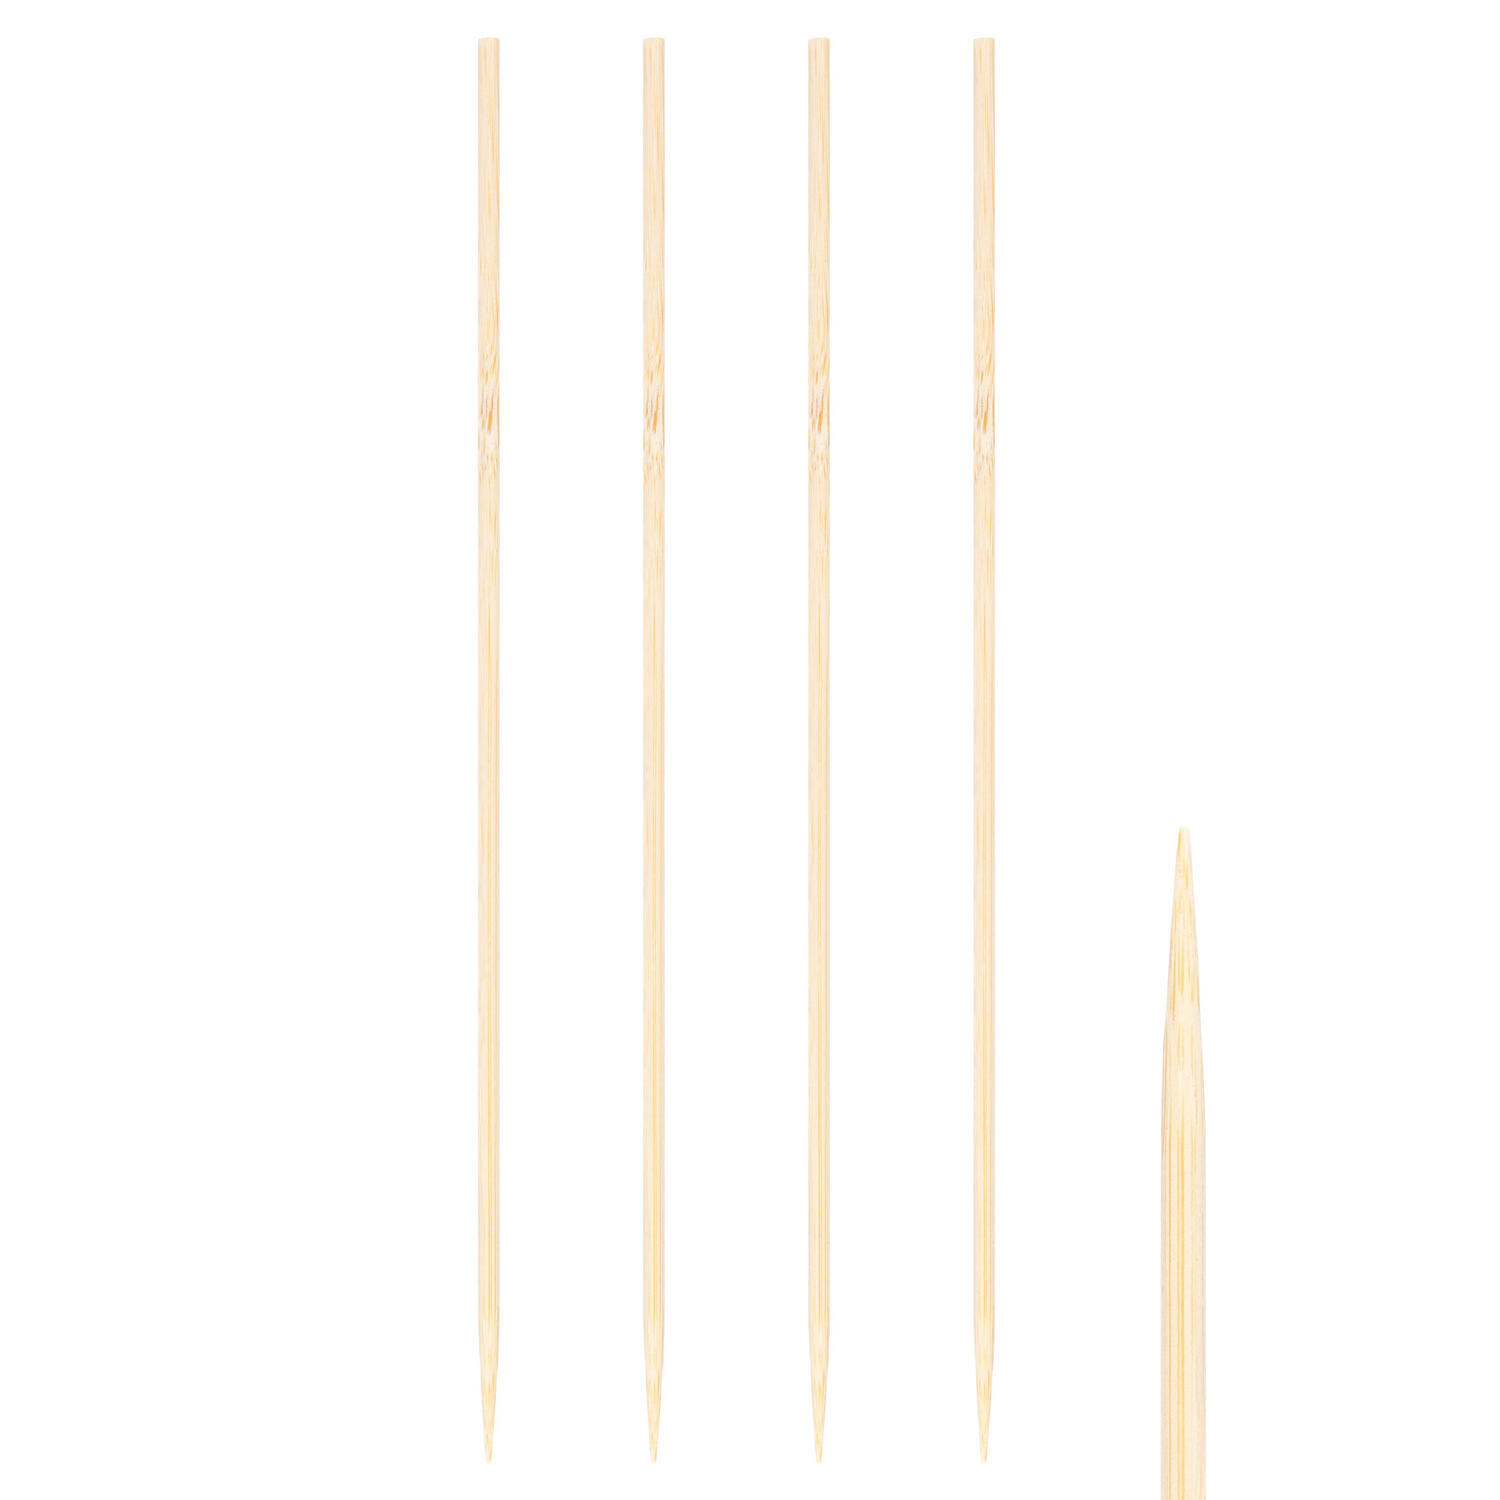 Schaschlikspiee aus Bambus, 4mm, 40cm, 250 Stk.